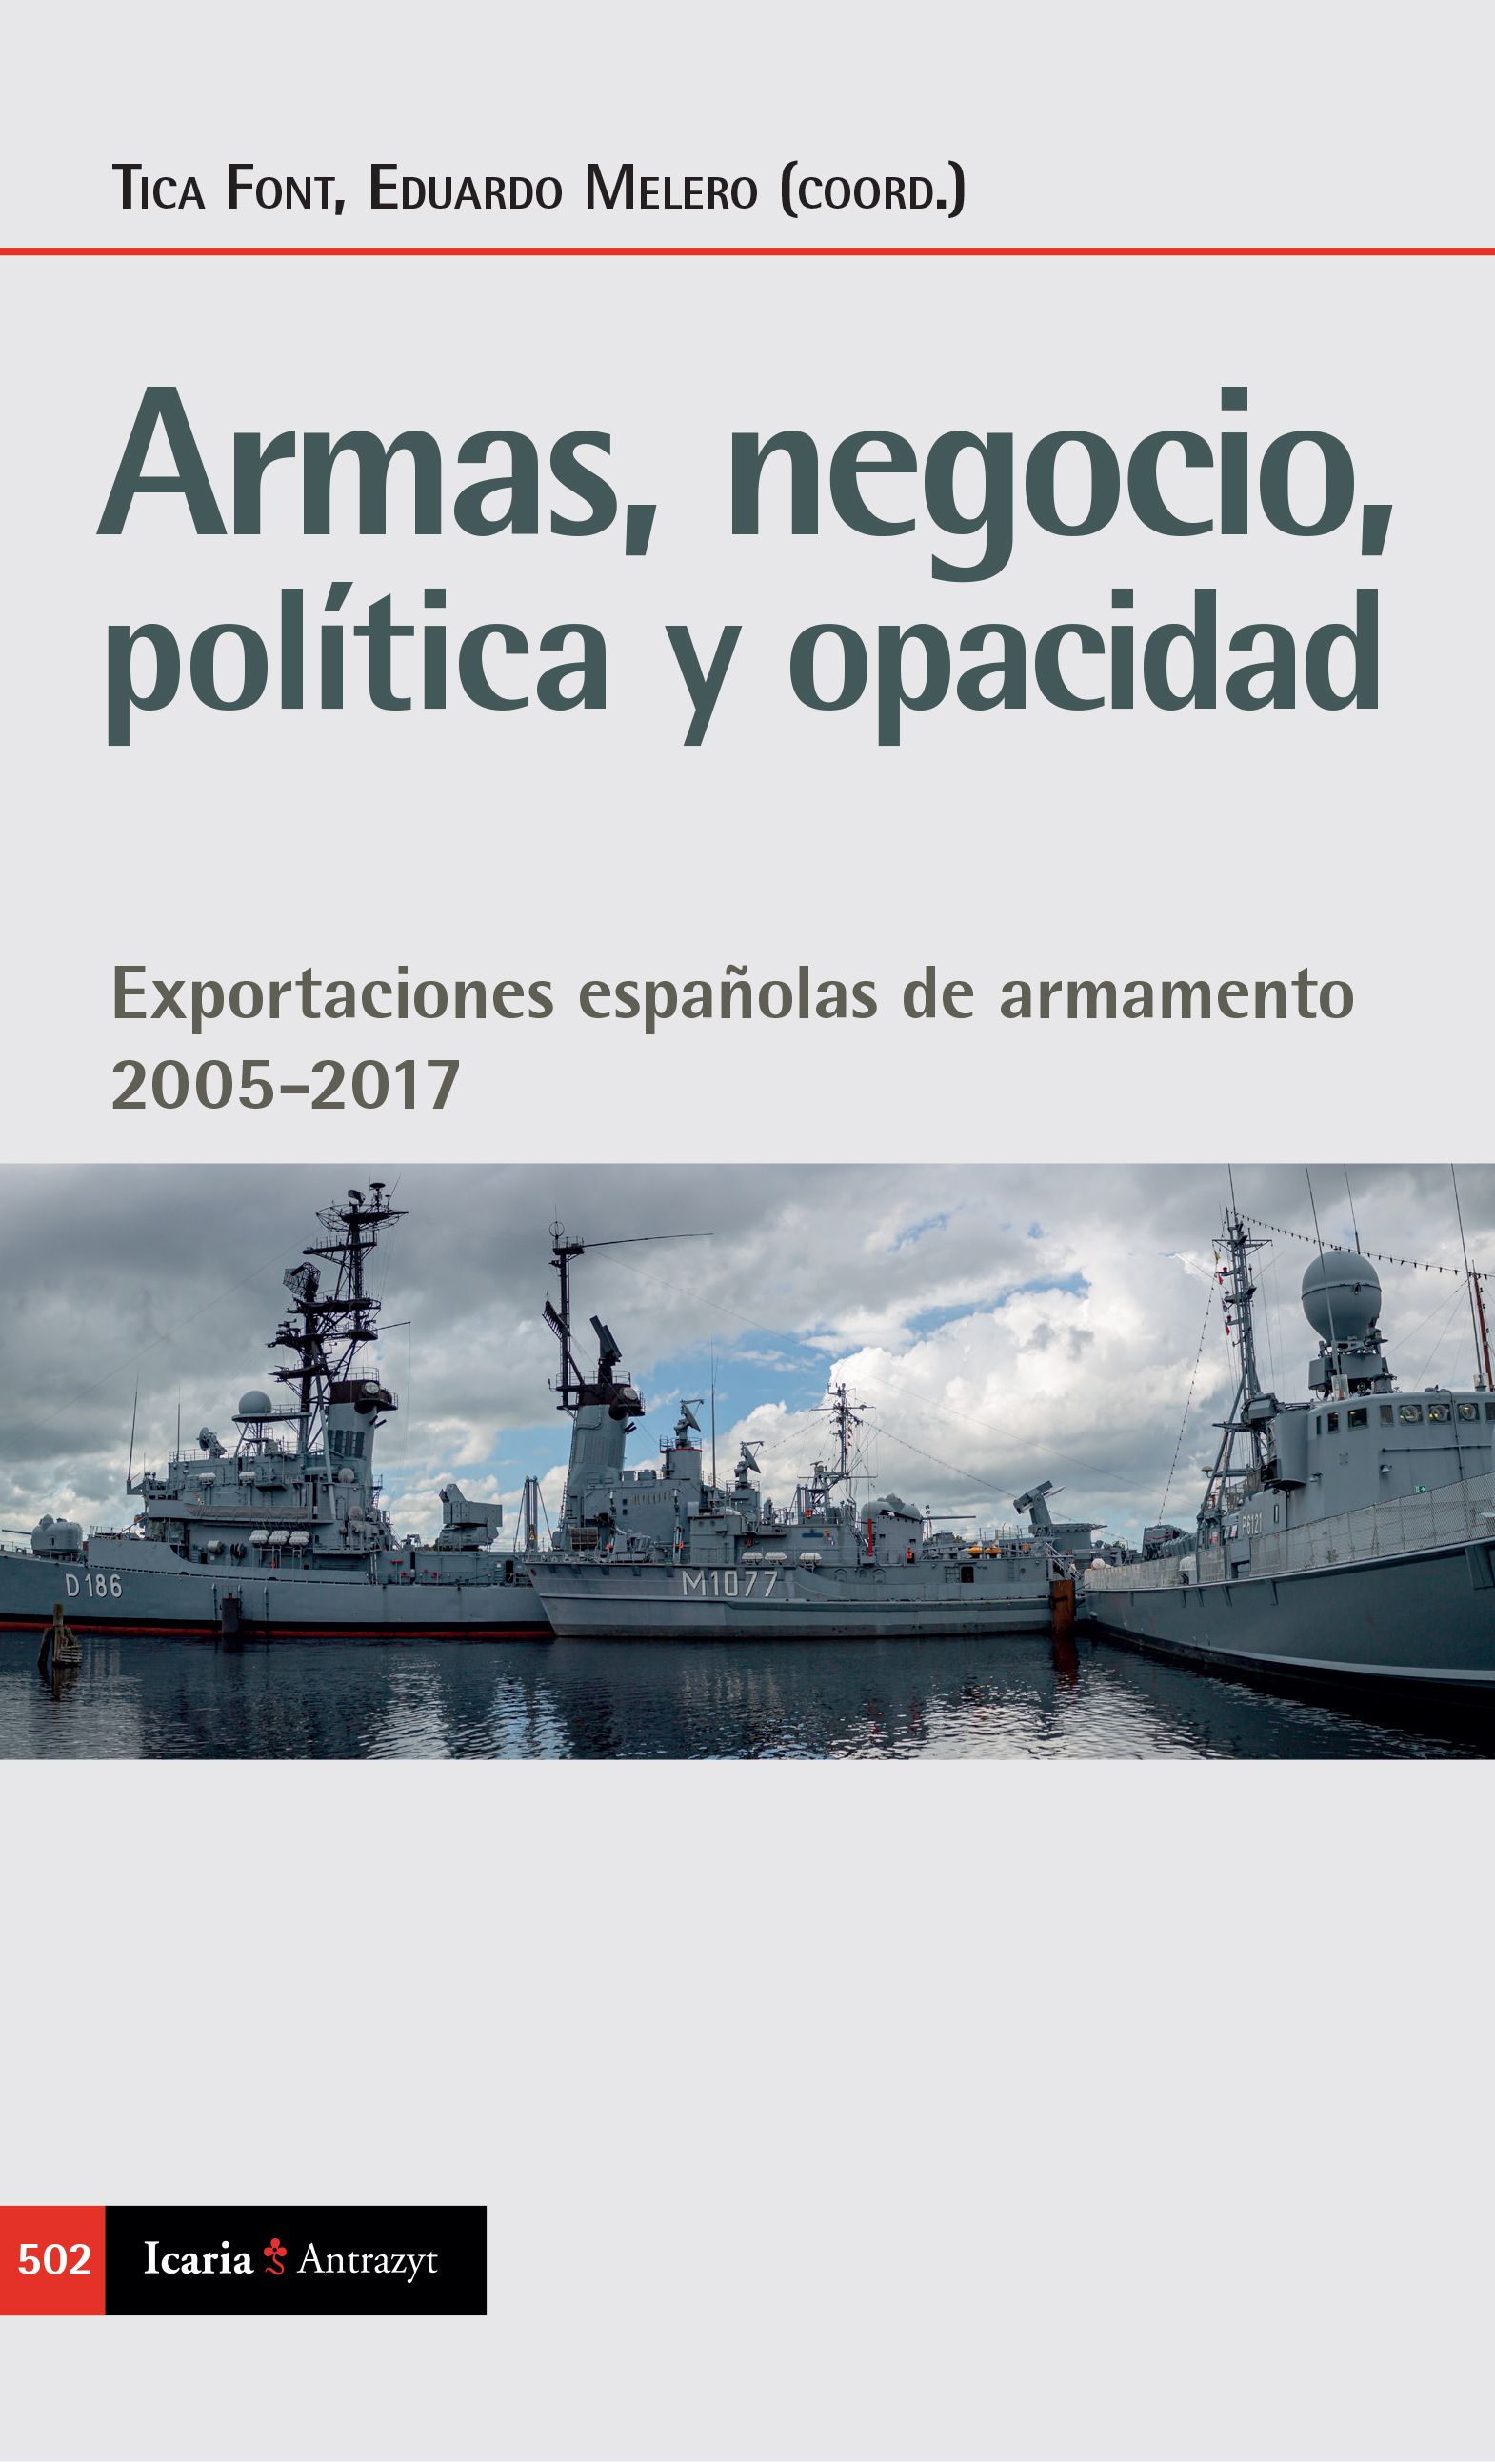 Portada libro armas negocio politica y opacidad de Tica Font y Eduardo Melero